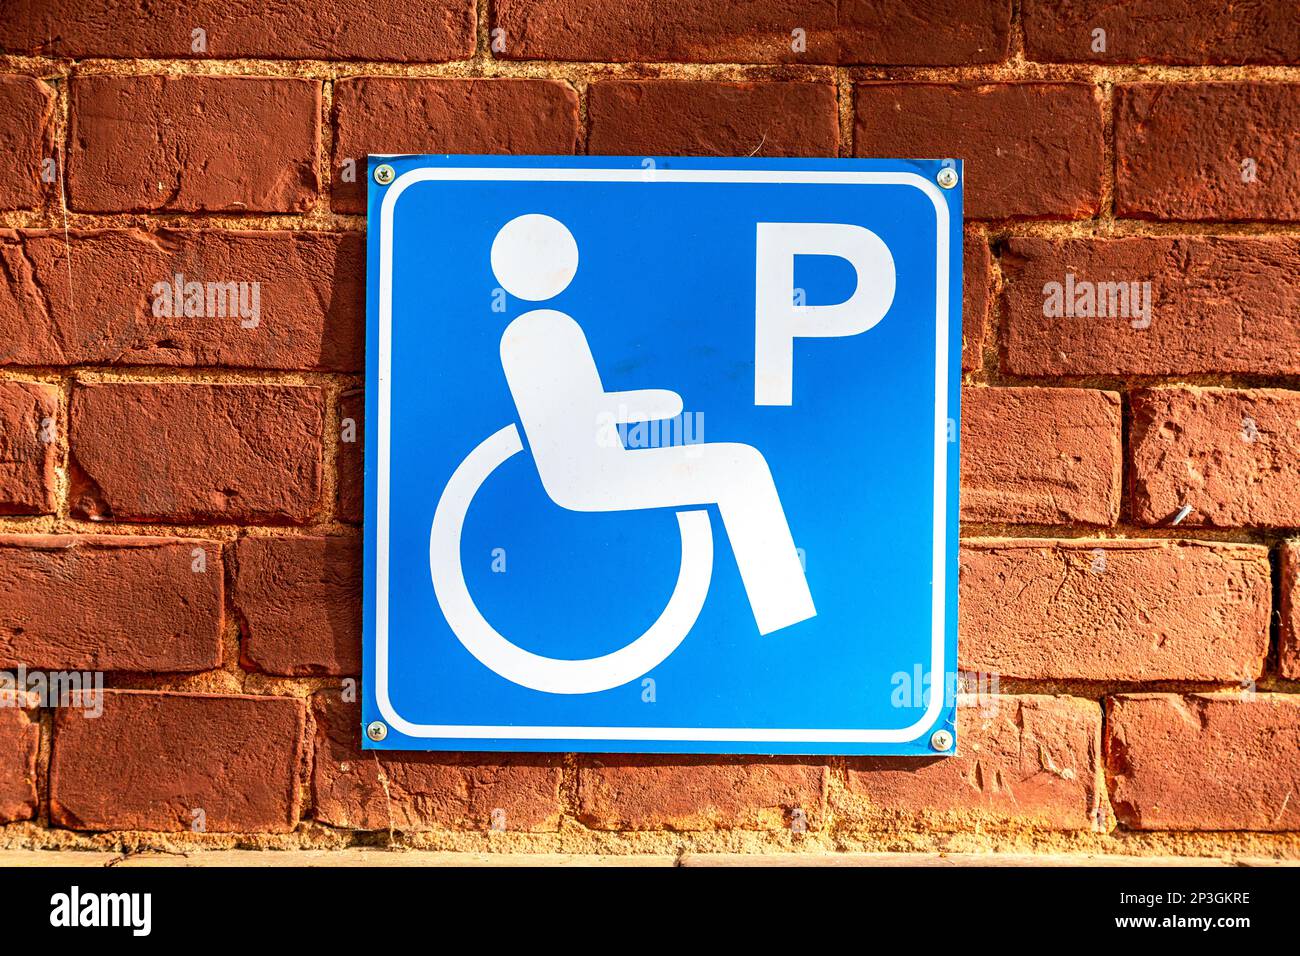 Icône de stationnement pour personnes handicapées sur le mur en brique rouge de près. Symbole fauteuil roulant Banque D'Images